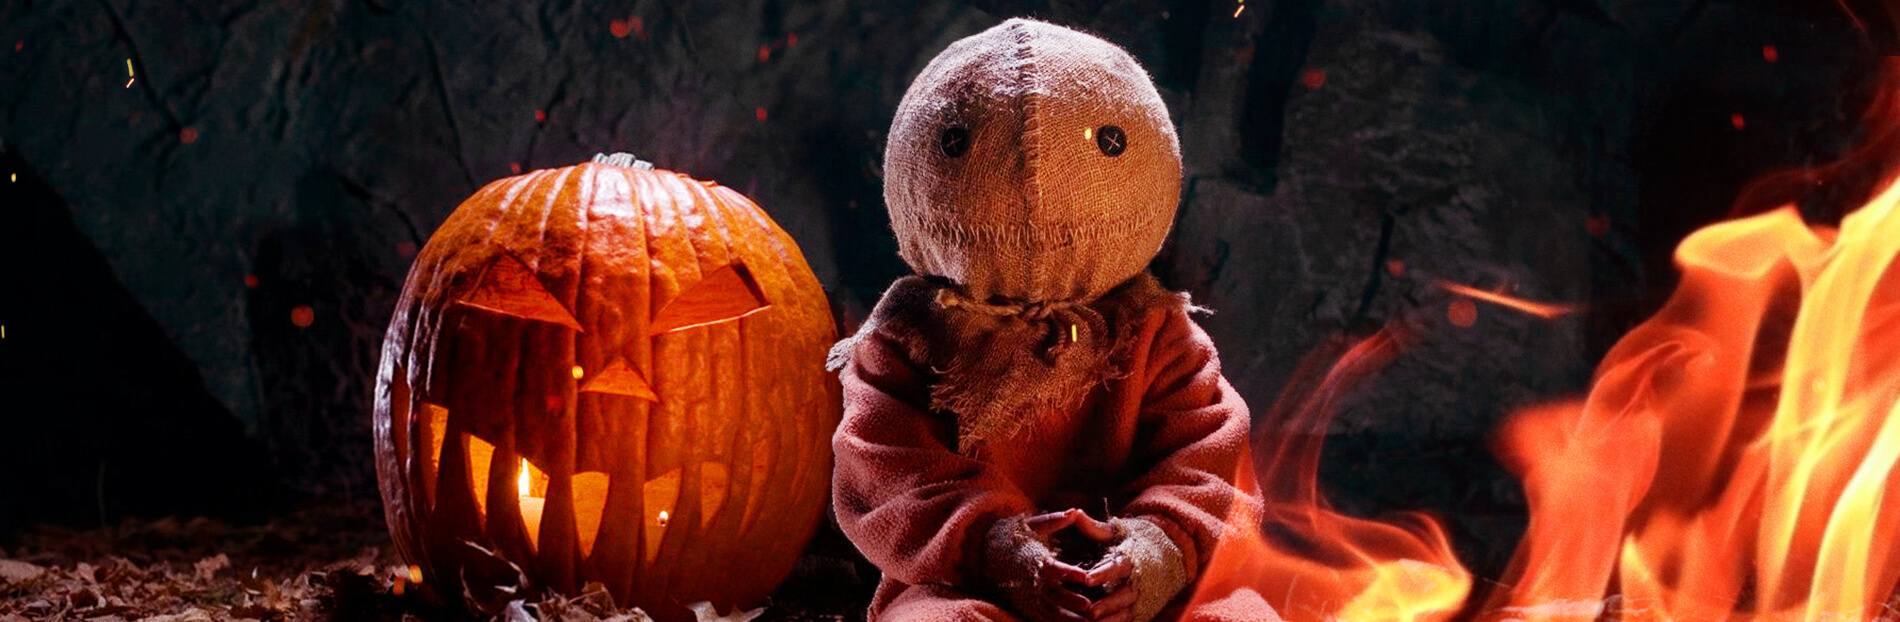 10 filmes sobre o Halloween para assistir com toda a família!